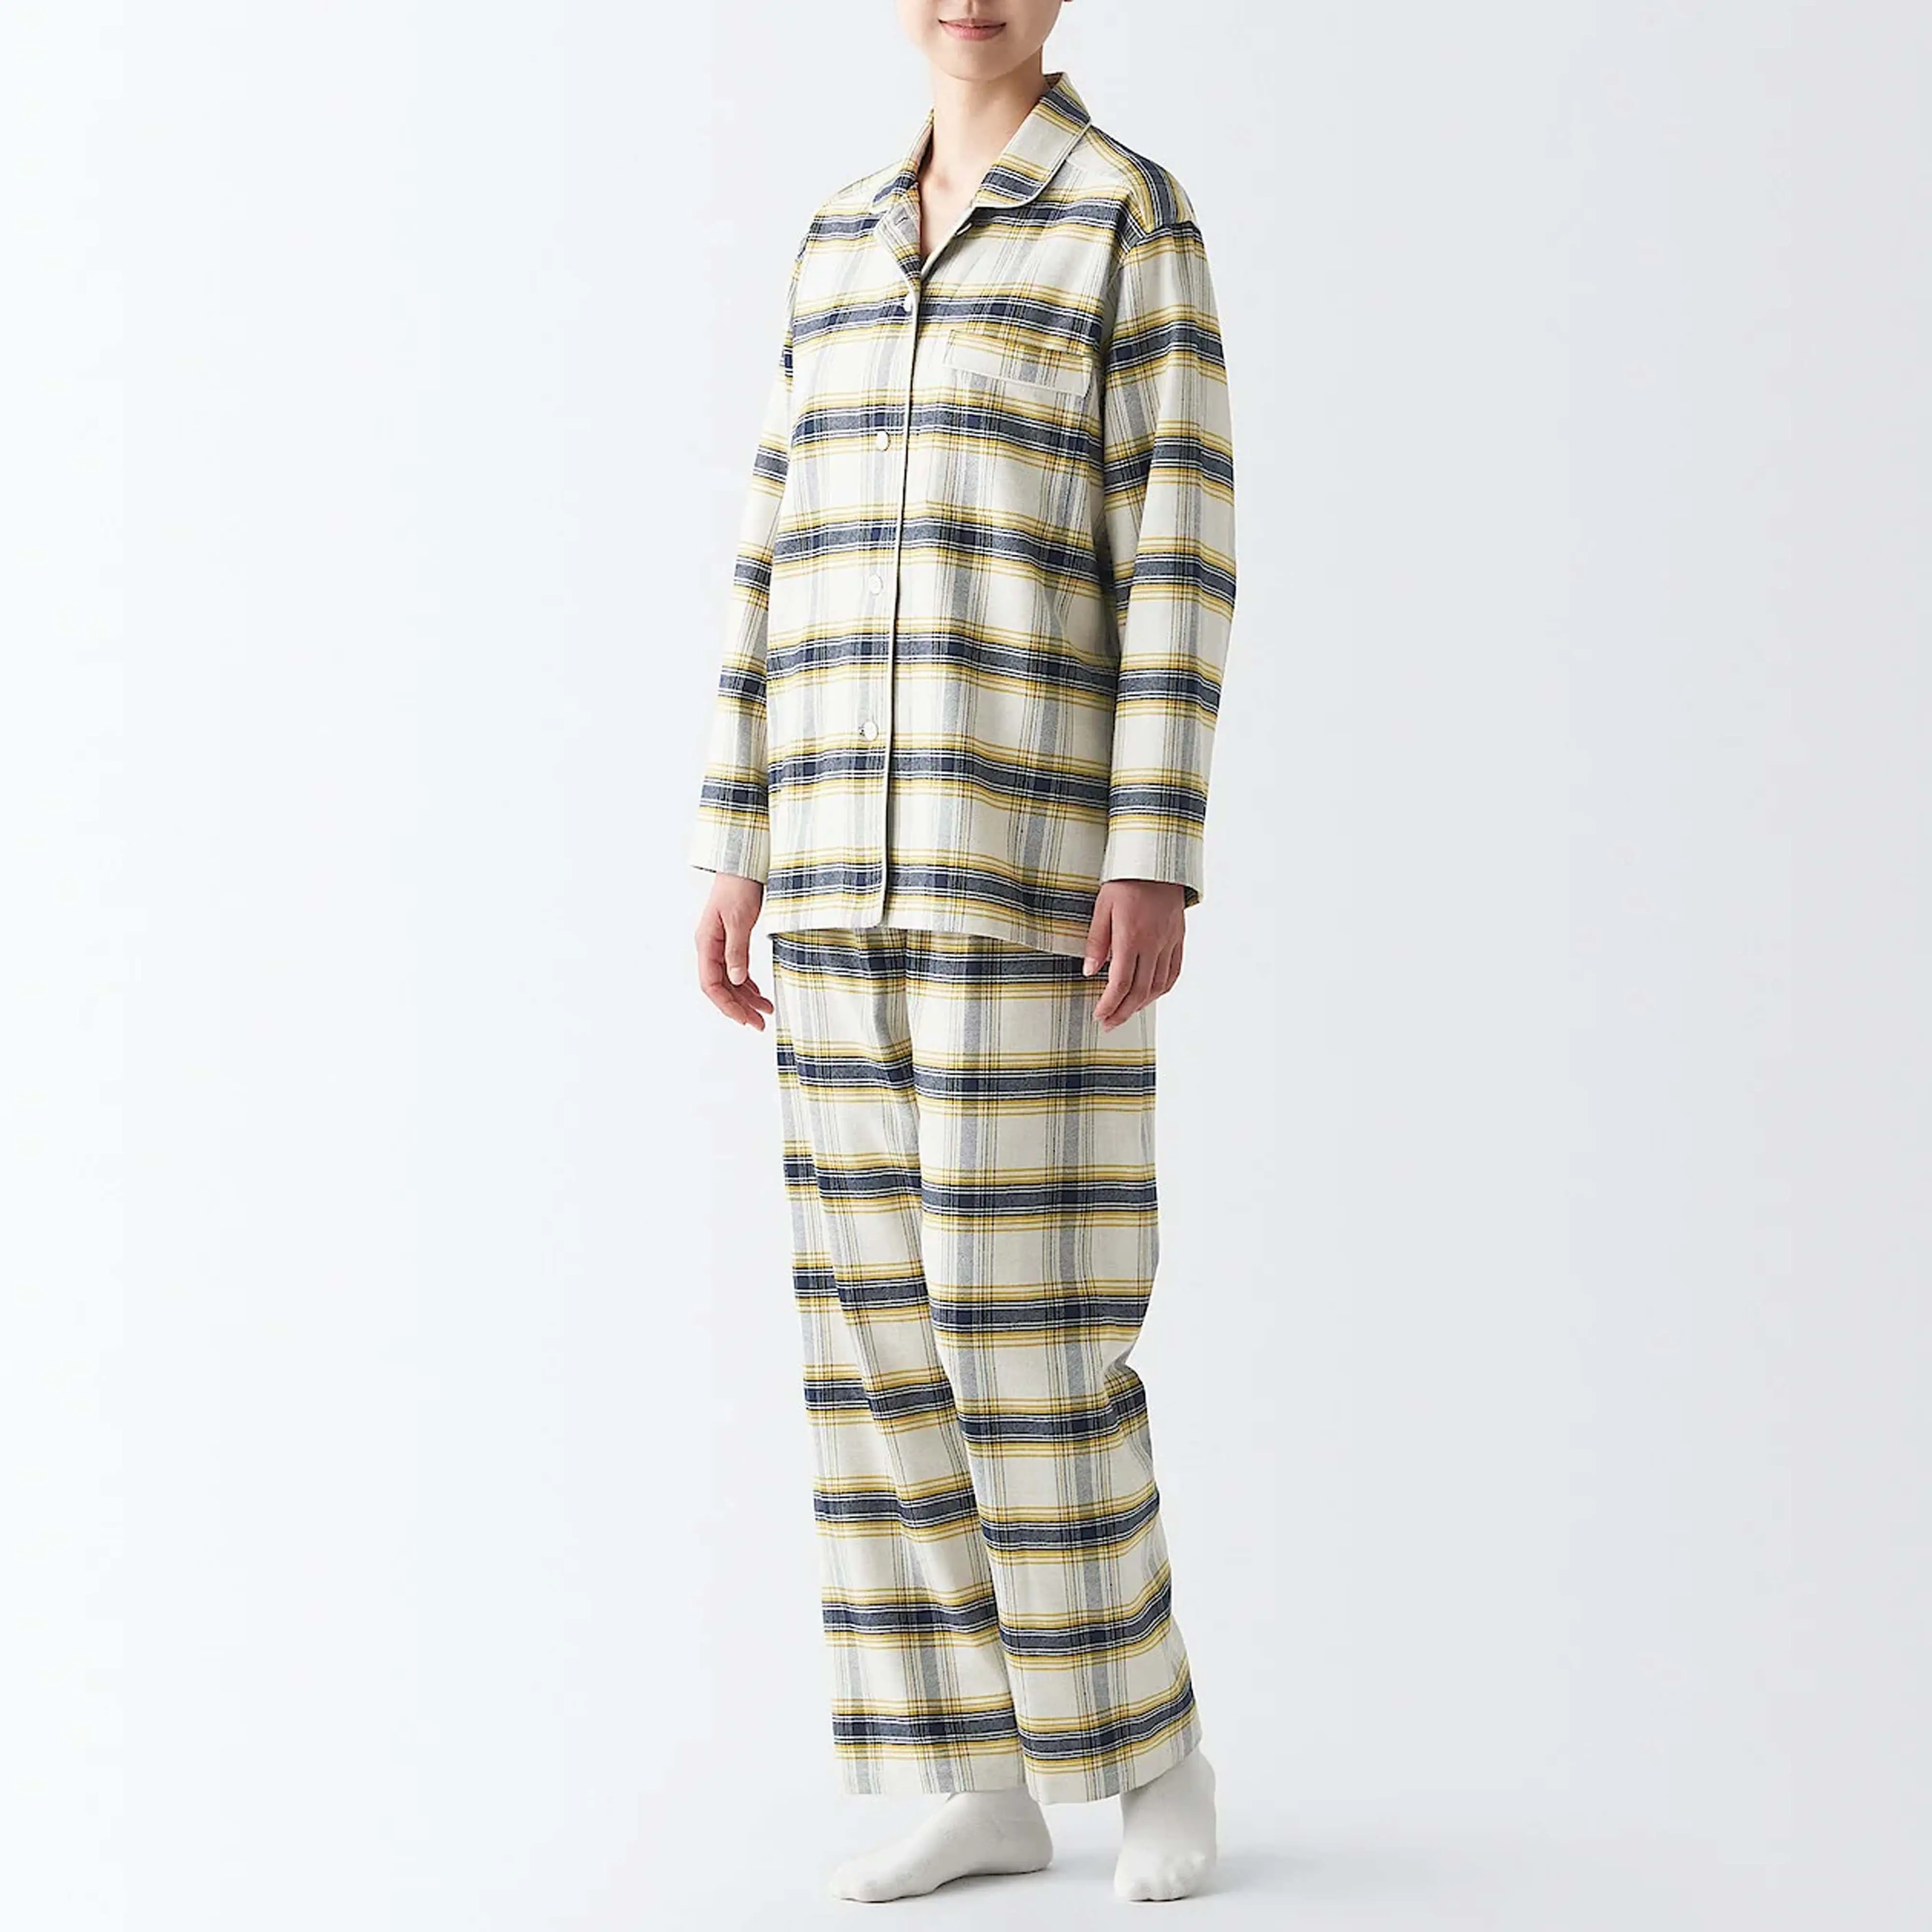 Personalizado de alta calidad de los hombres Loungewear Set para adultos sólido de manga larga Modal suave ropa de dormir pijamas para hombres ropa de dormir para hombres